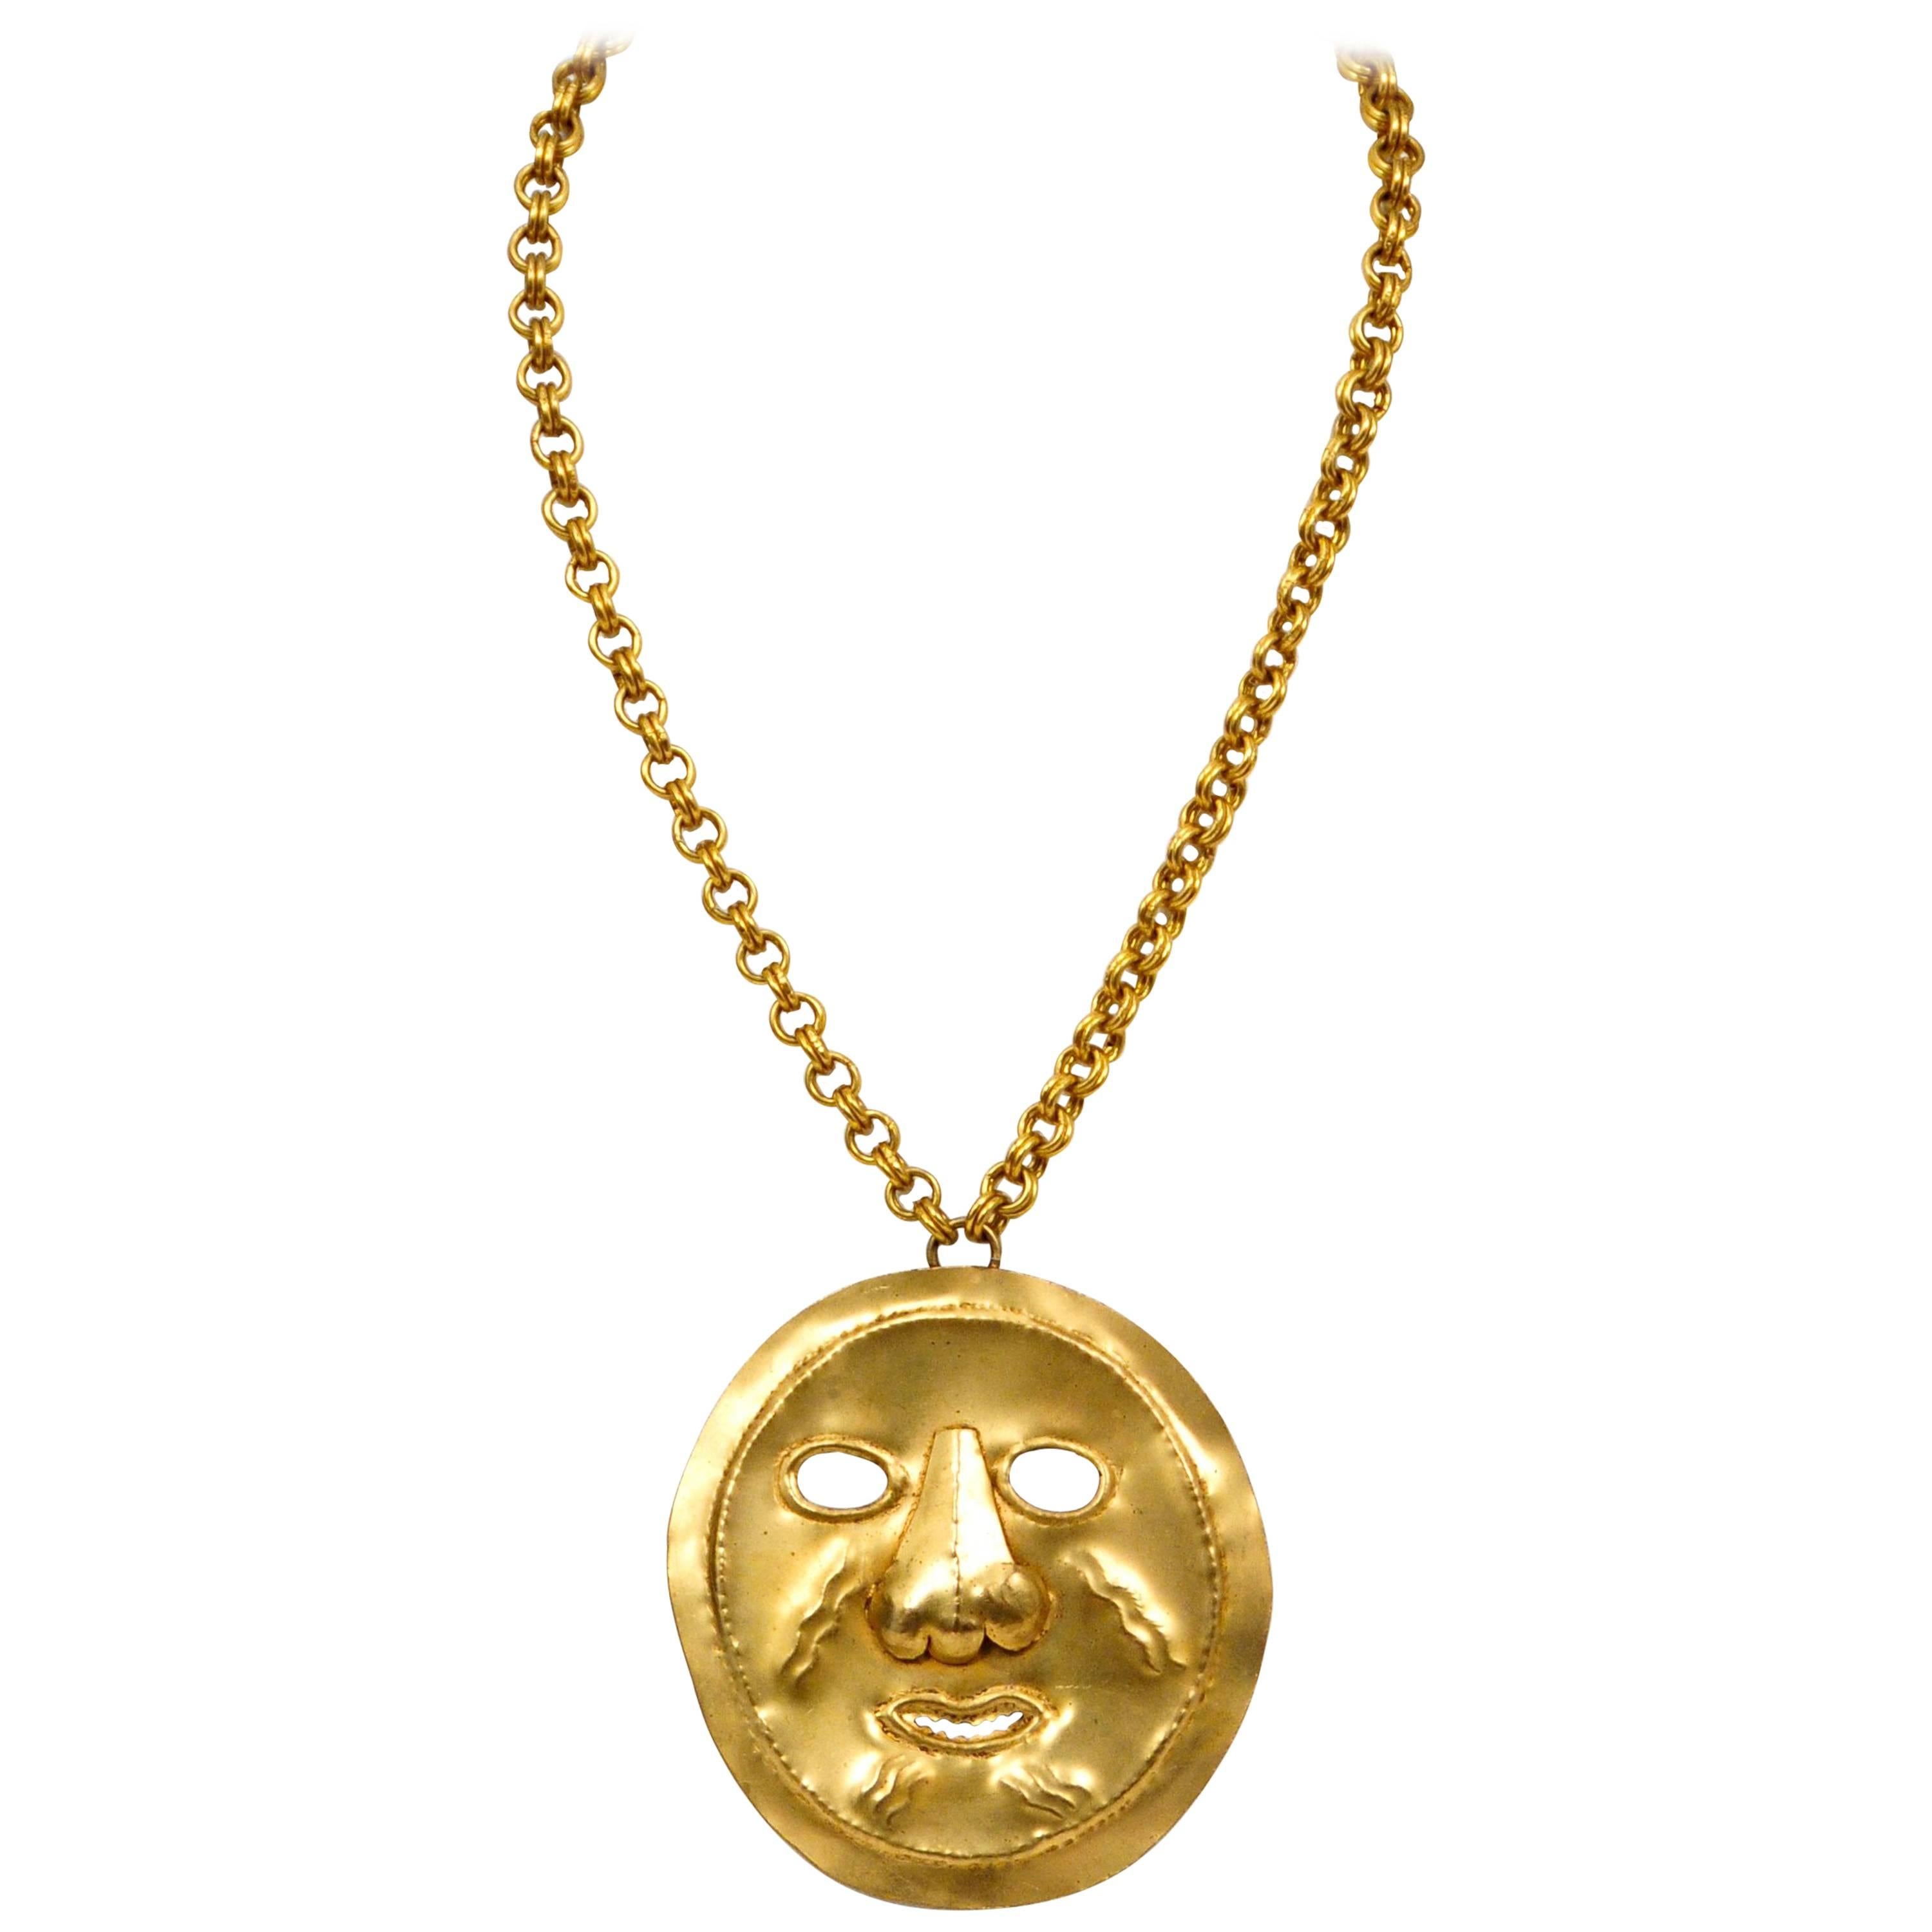 Yves Saint Laurent, collier pensant précolombien en métal doré avec masque en vente